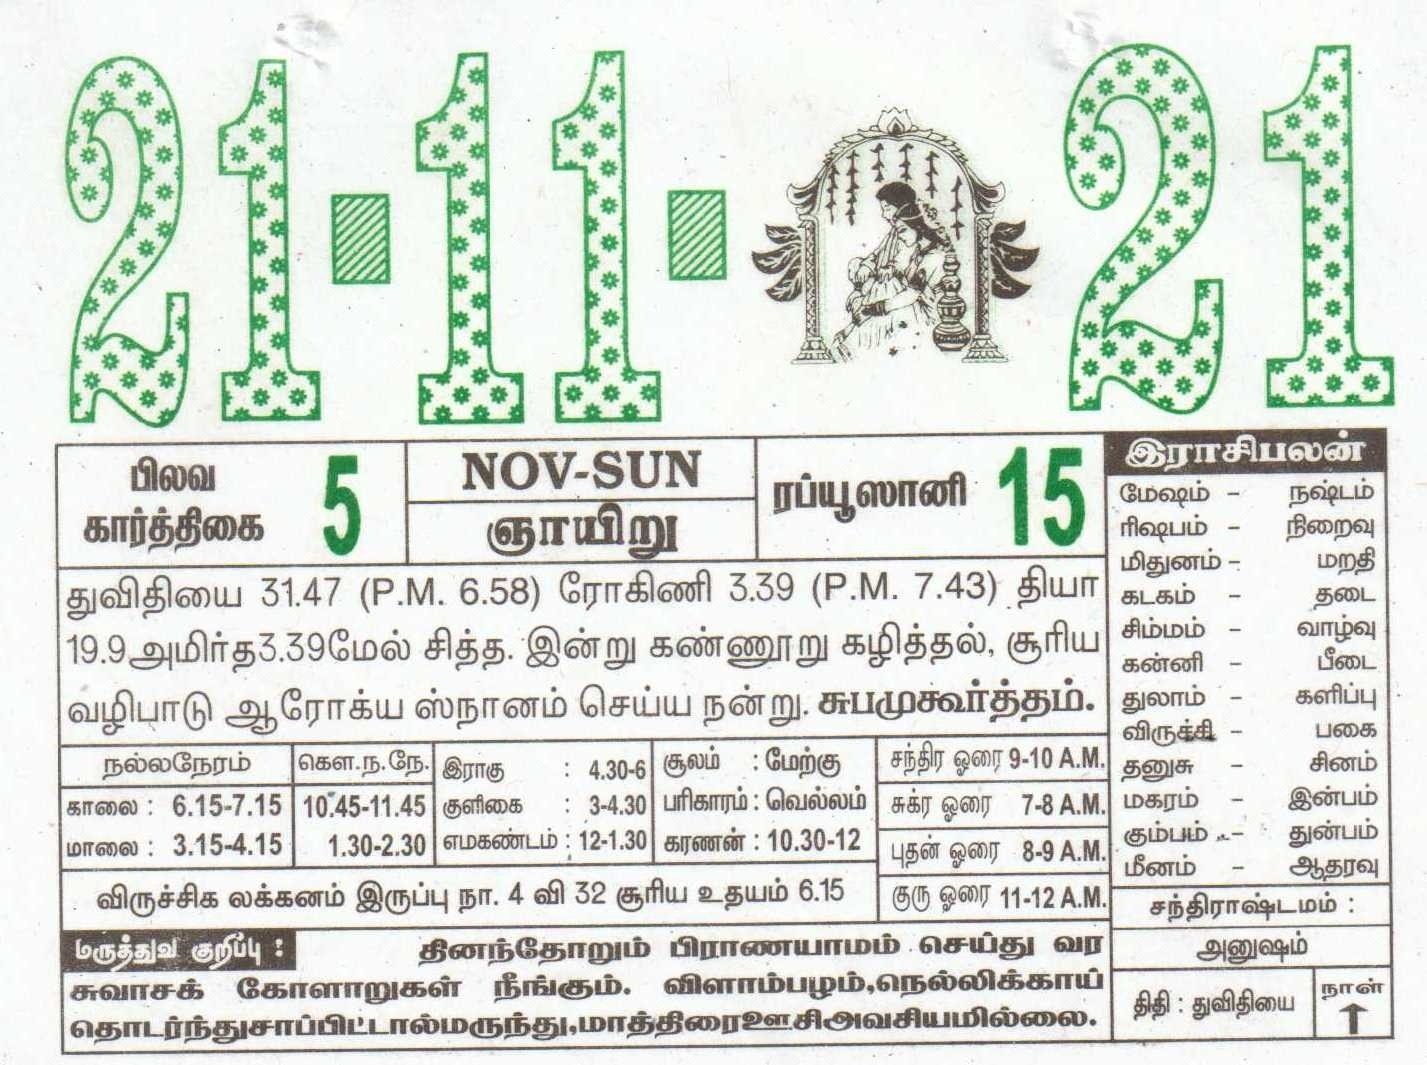 21-11-2021 Daily Calendar | Date 21 , January Daily Tear Off Calendar | Daily Panchangam Rasi Palan Tamil Calendar 2021 November